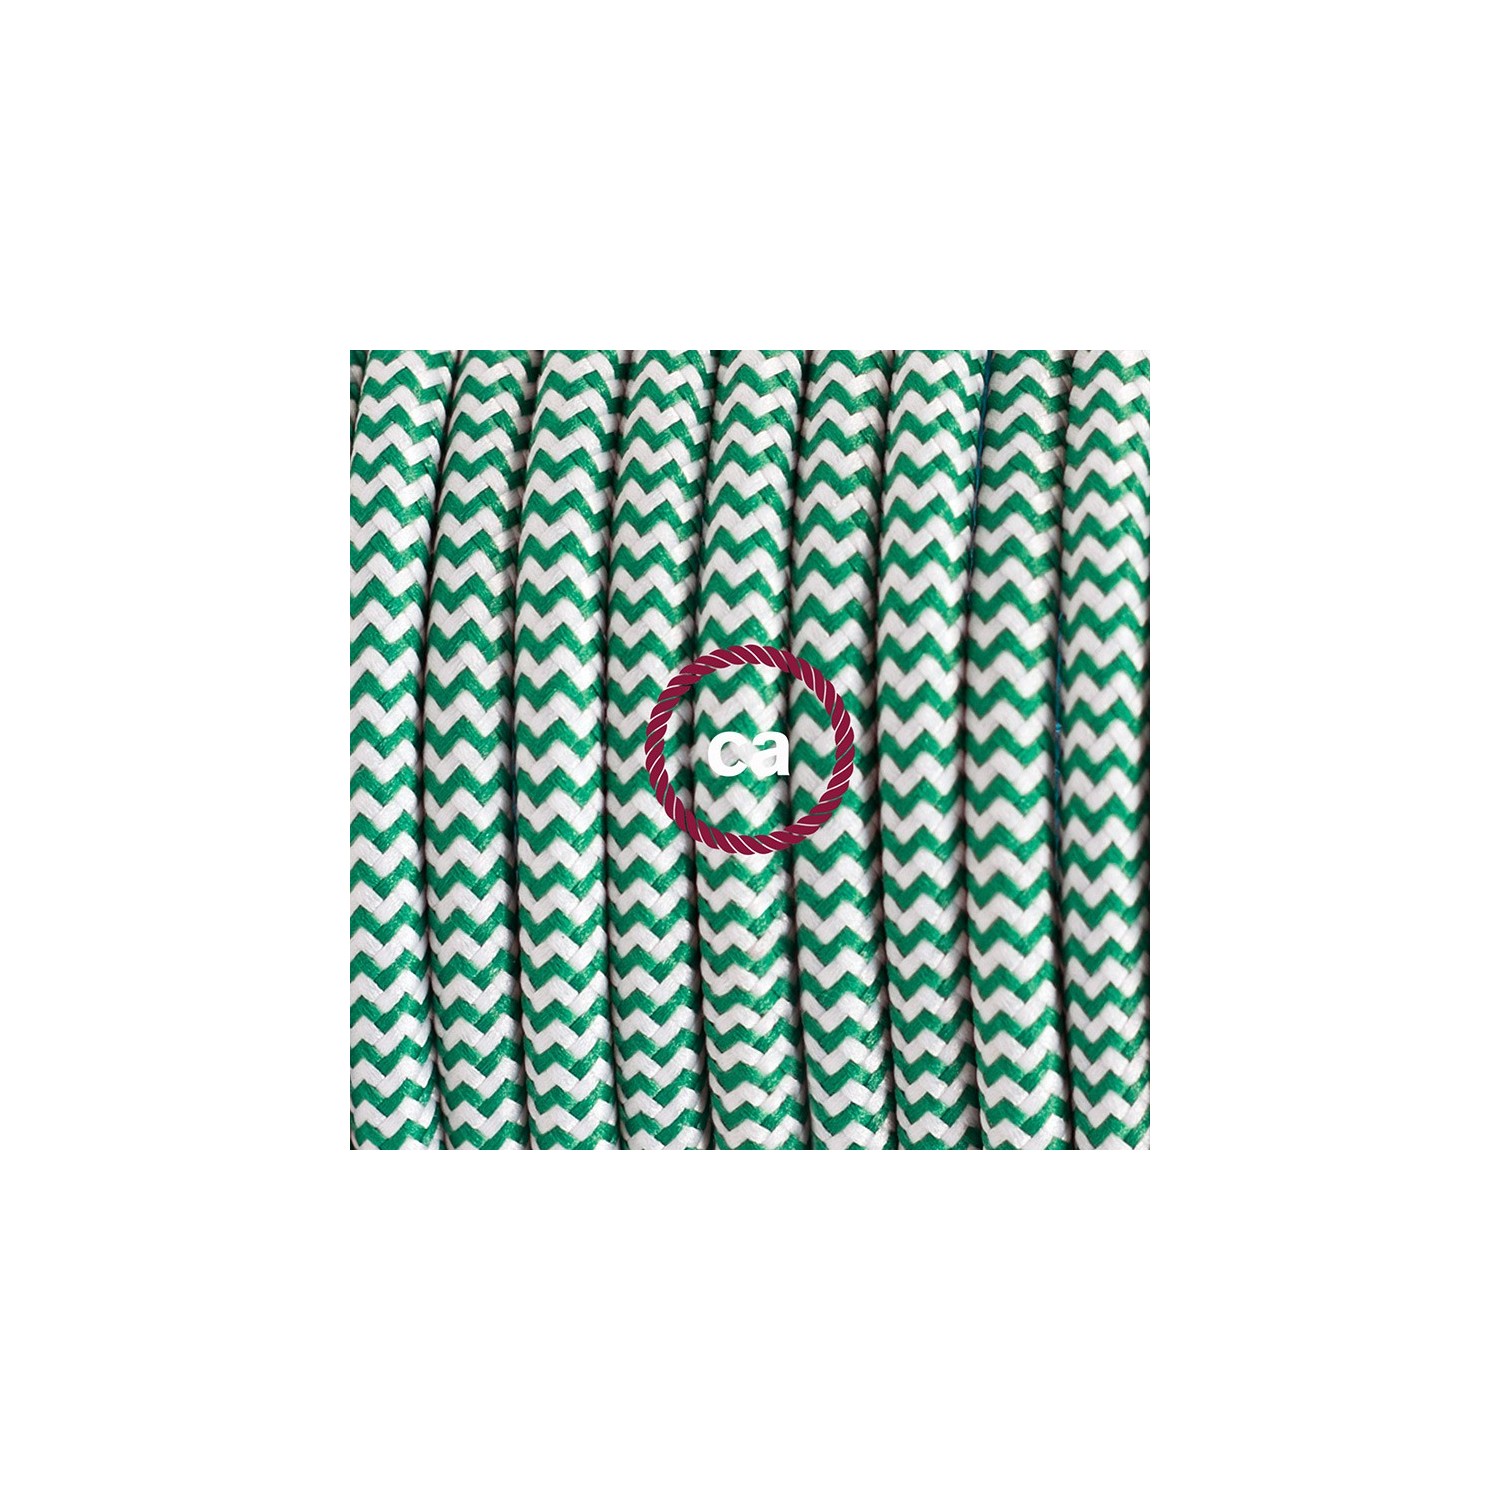 Zuleitung für Tischleuchten RZ06 Zick-Zack Weiß Grün Seideneffekt 1,80 m. Wählen Sie aus drei Farben bei Schalter und Stecke.